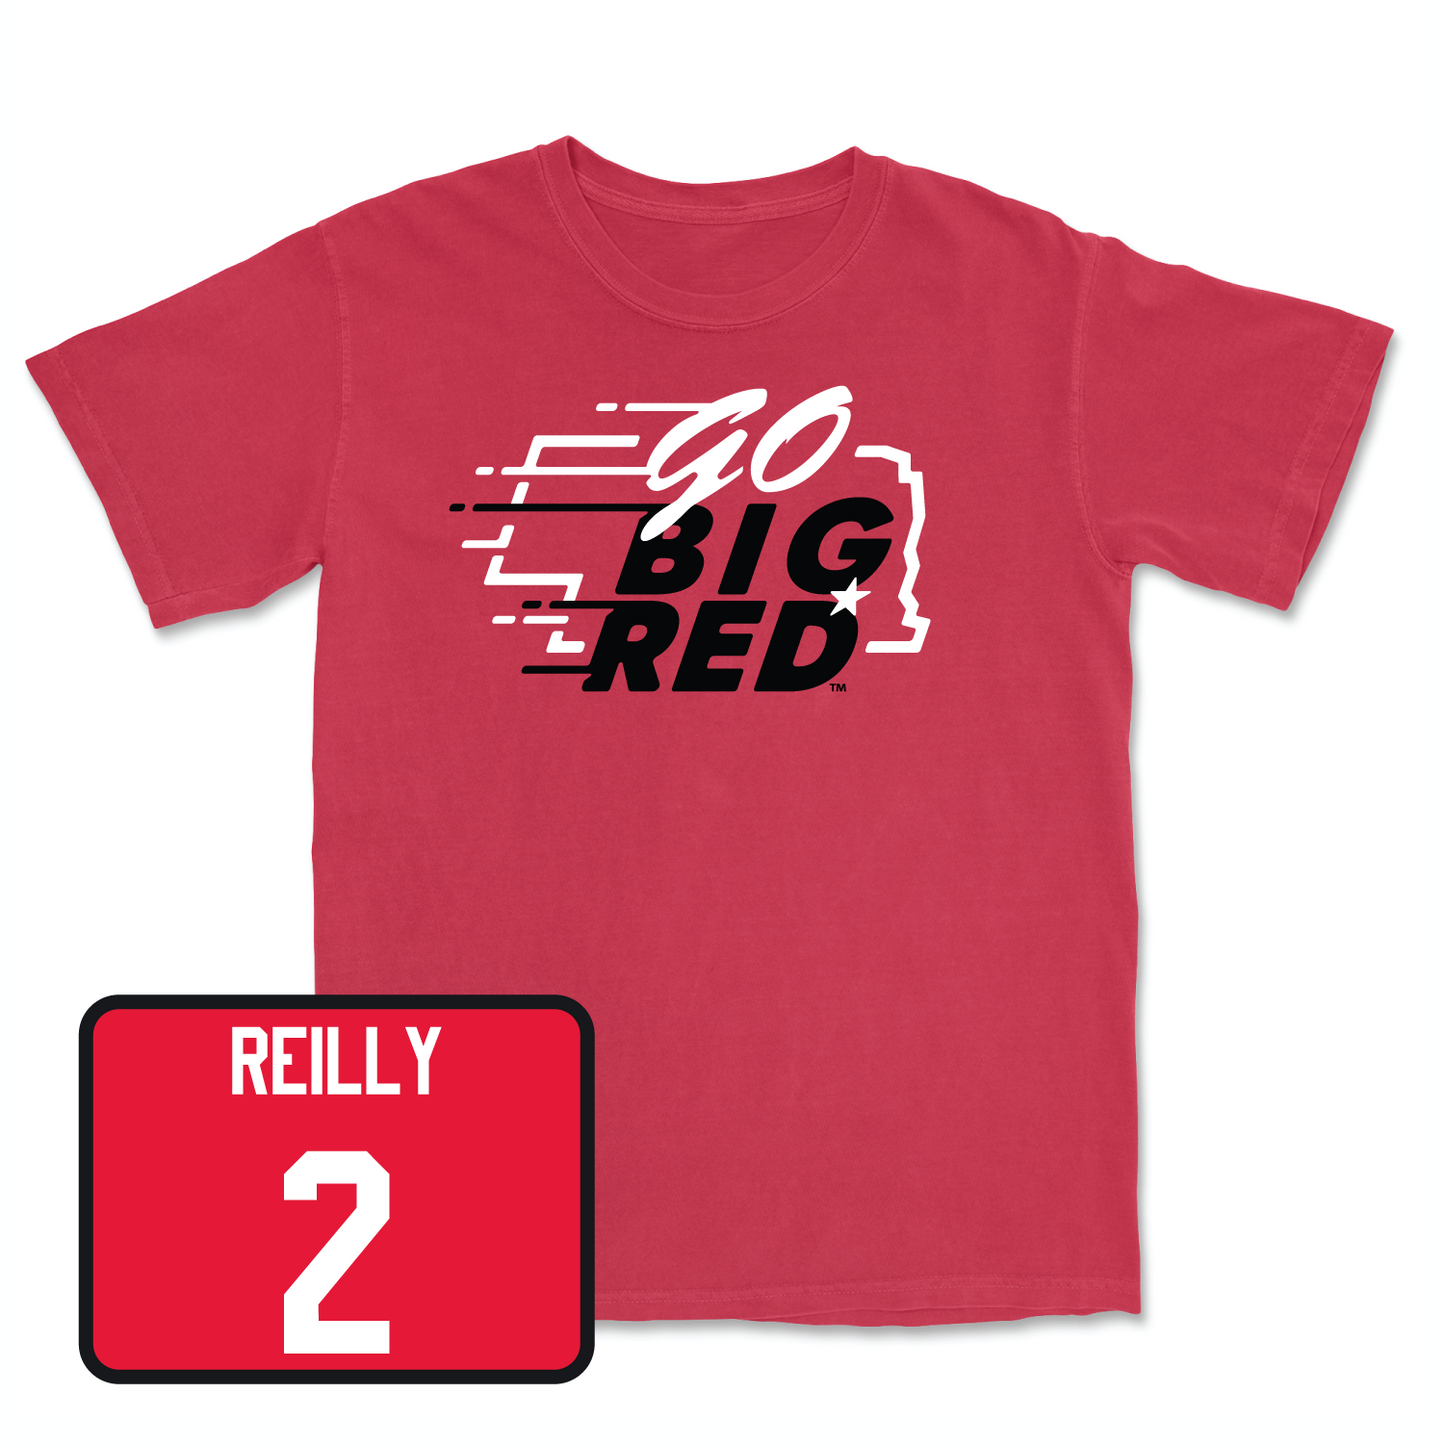 Red Women's Volleyball GBR Tee Medium / Bergen Reilly | #2